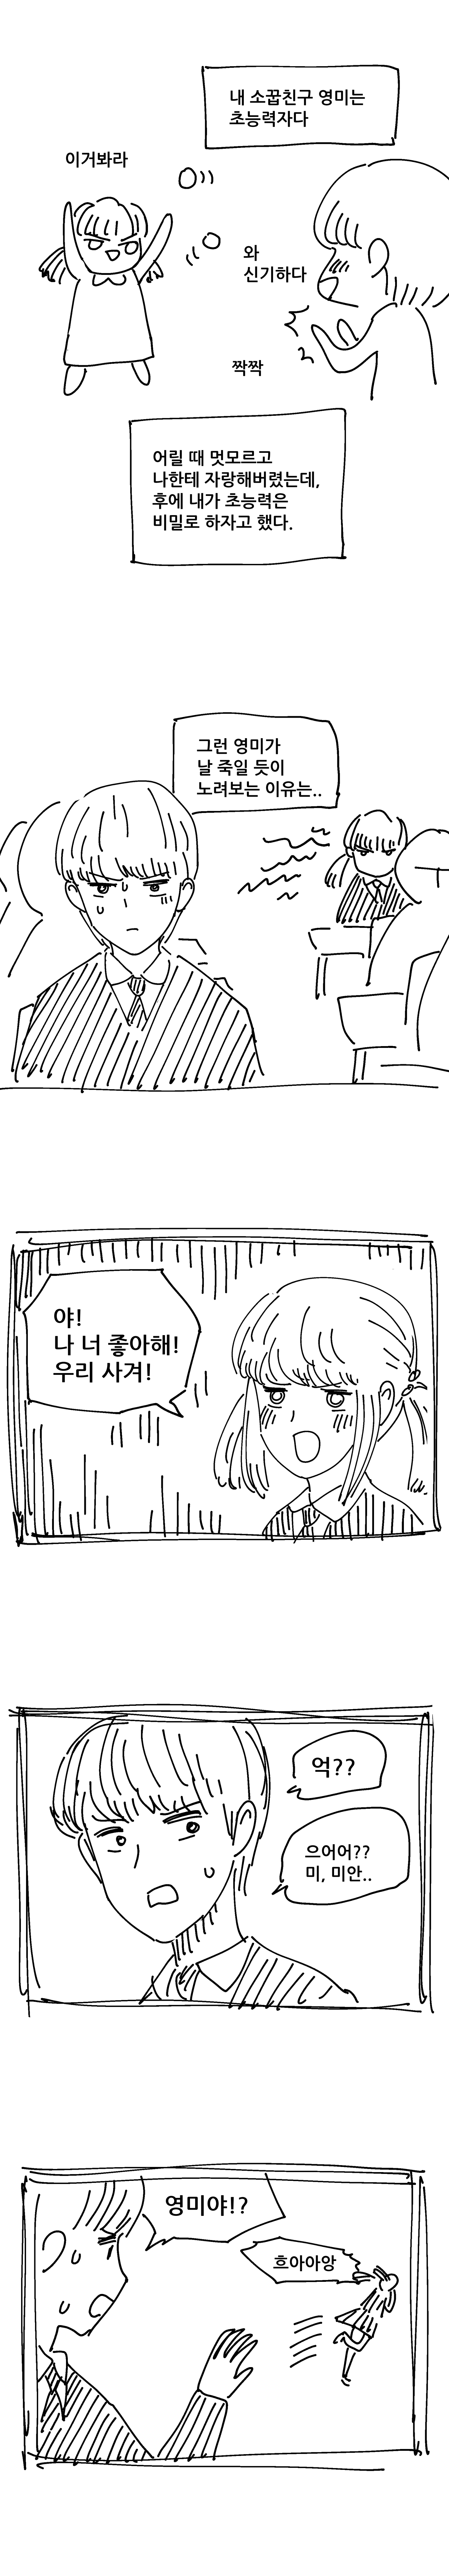 후방) 초능력 소꿉친구에게 수업 중 능욕당하는 만화.manhwa